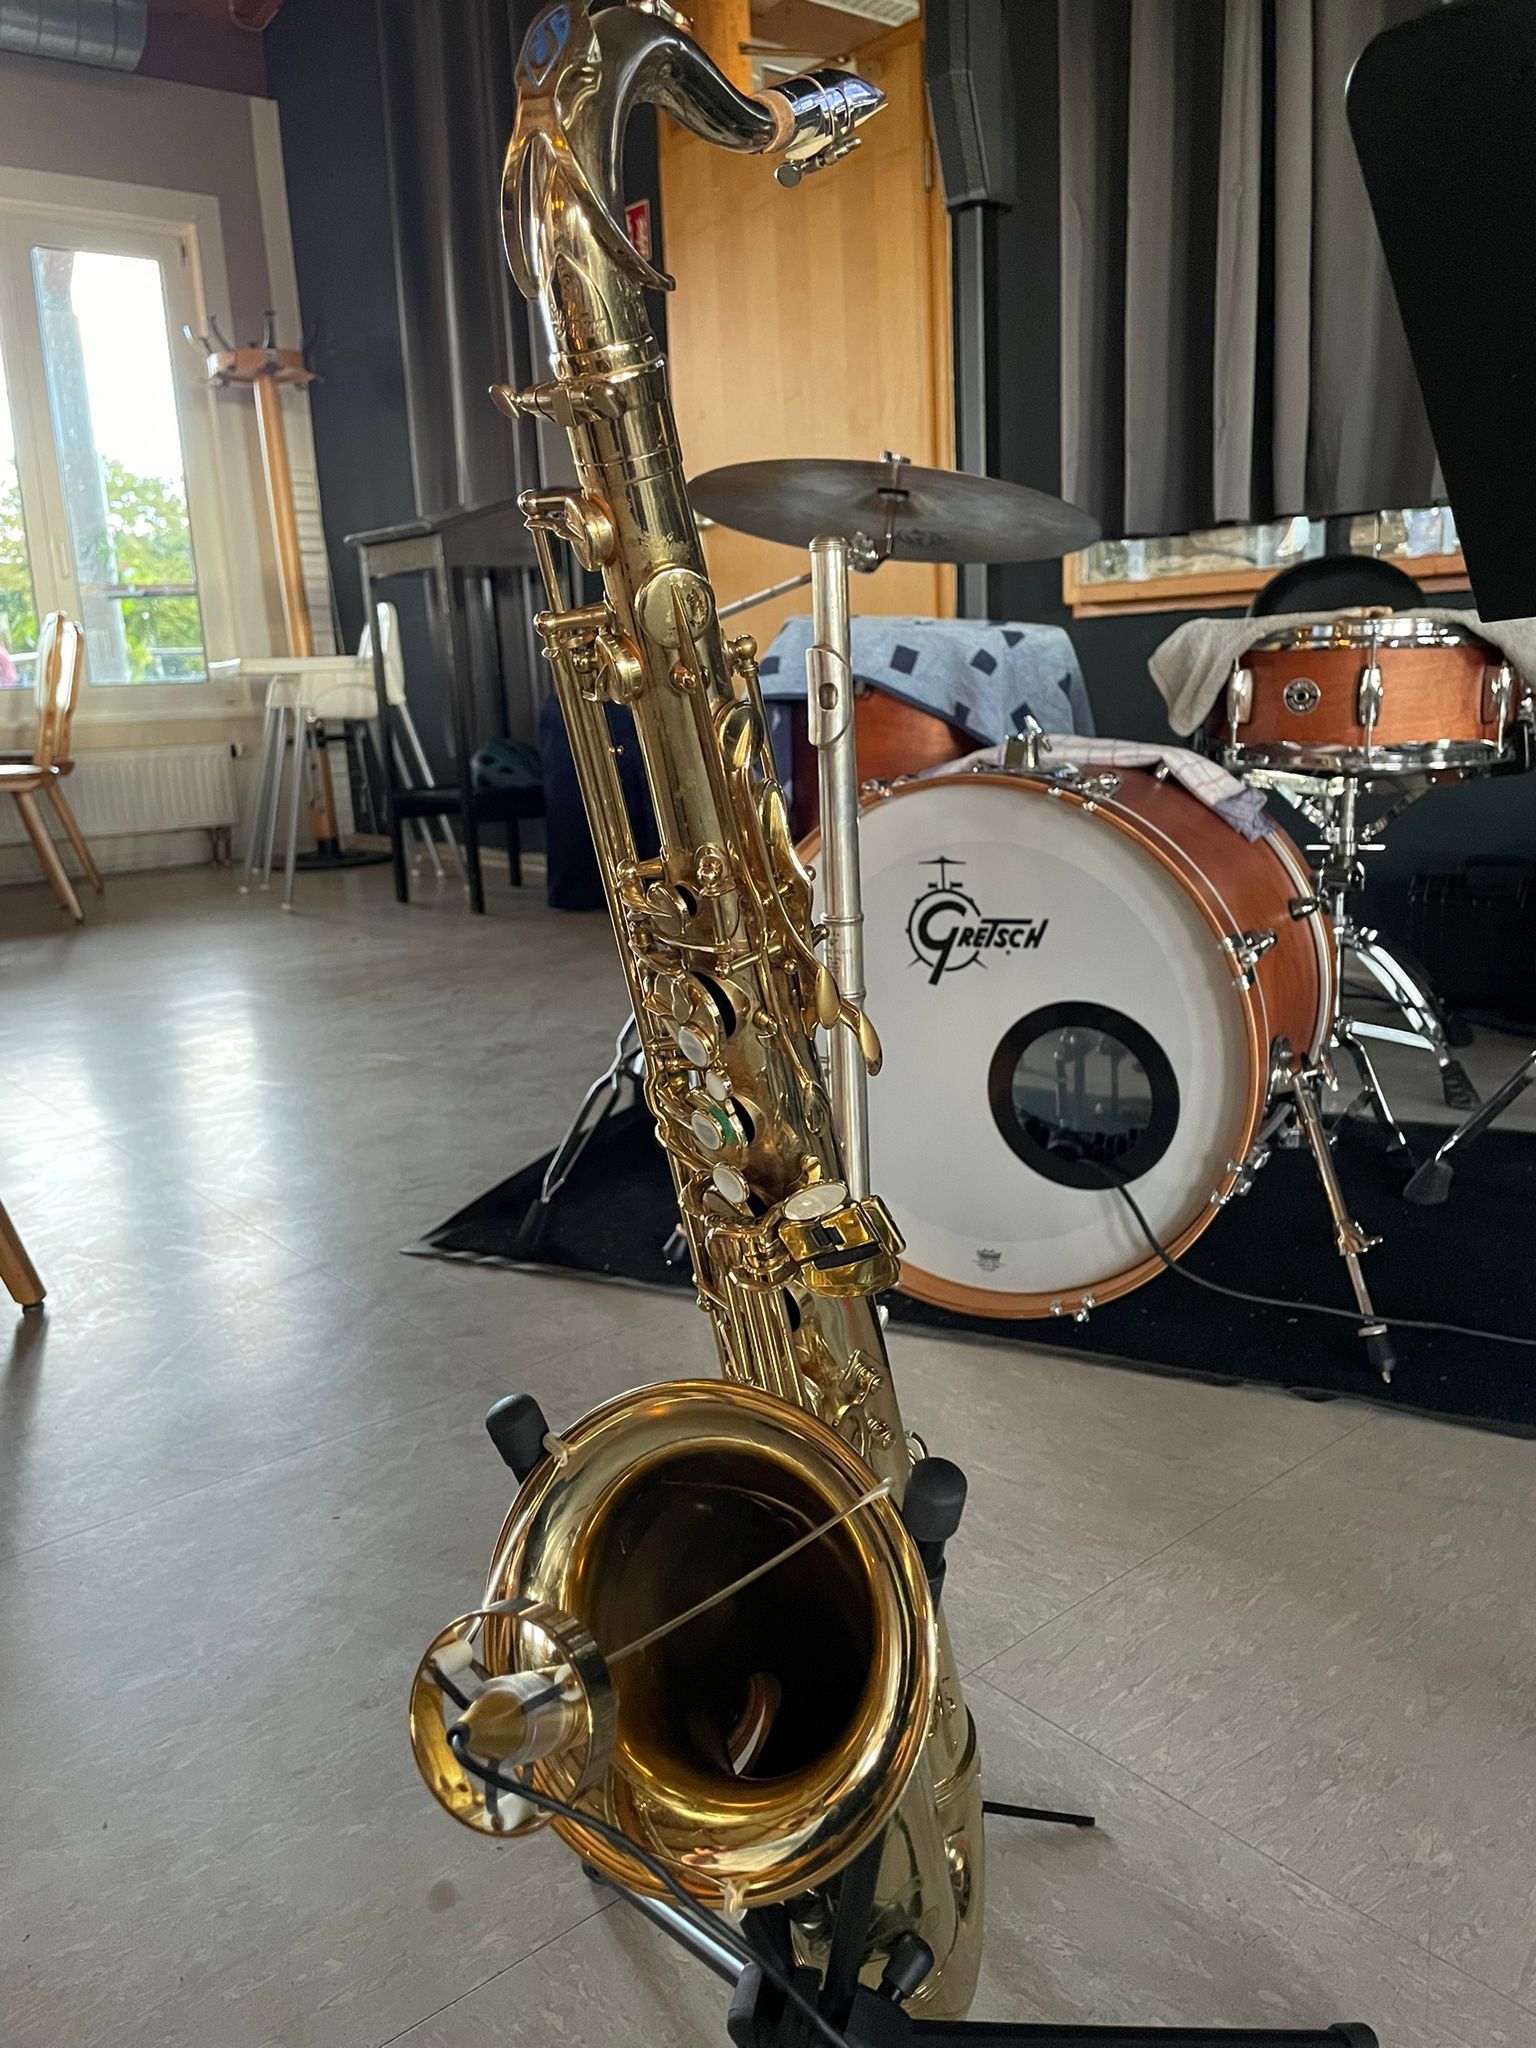 Bild zeigt Saxophon und Drums vorm Soundcheck